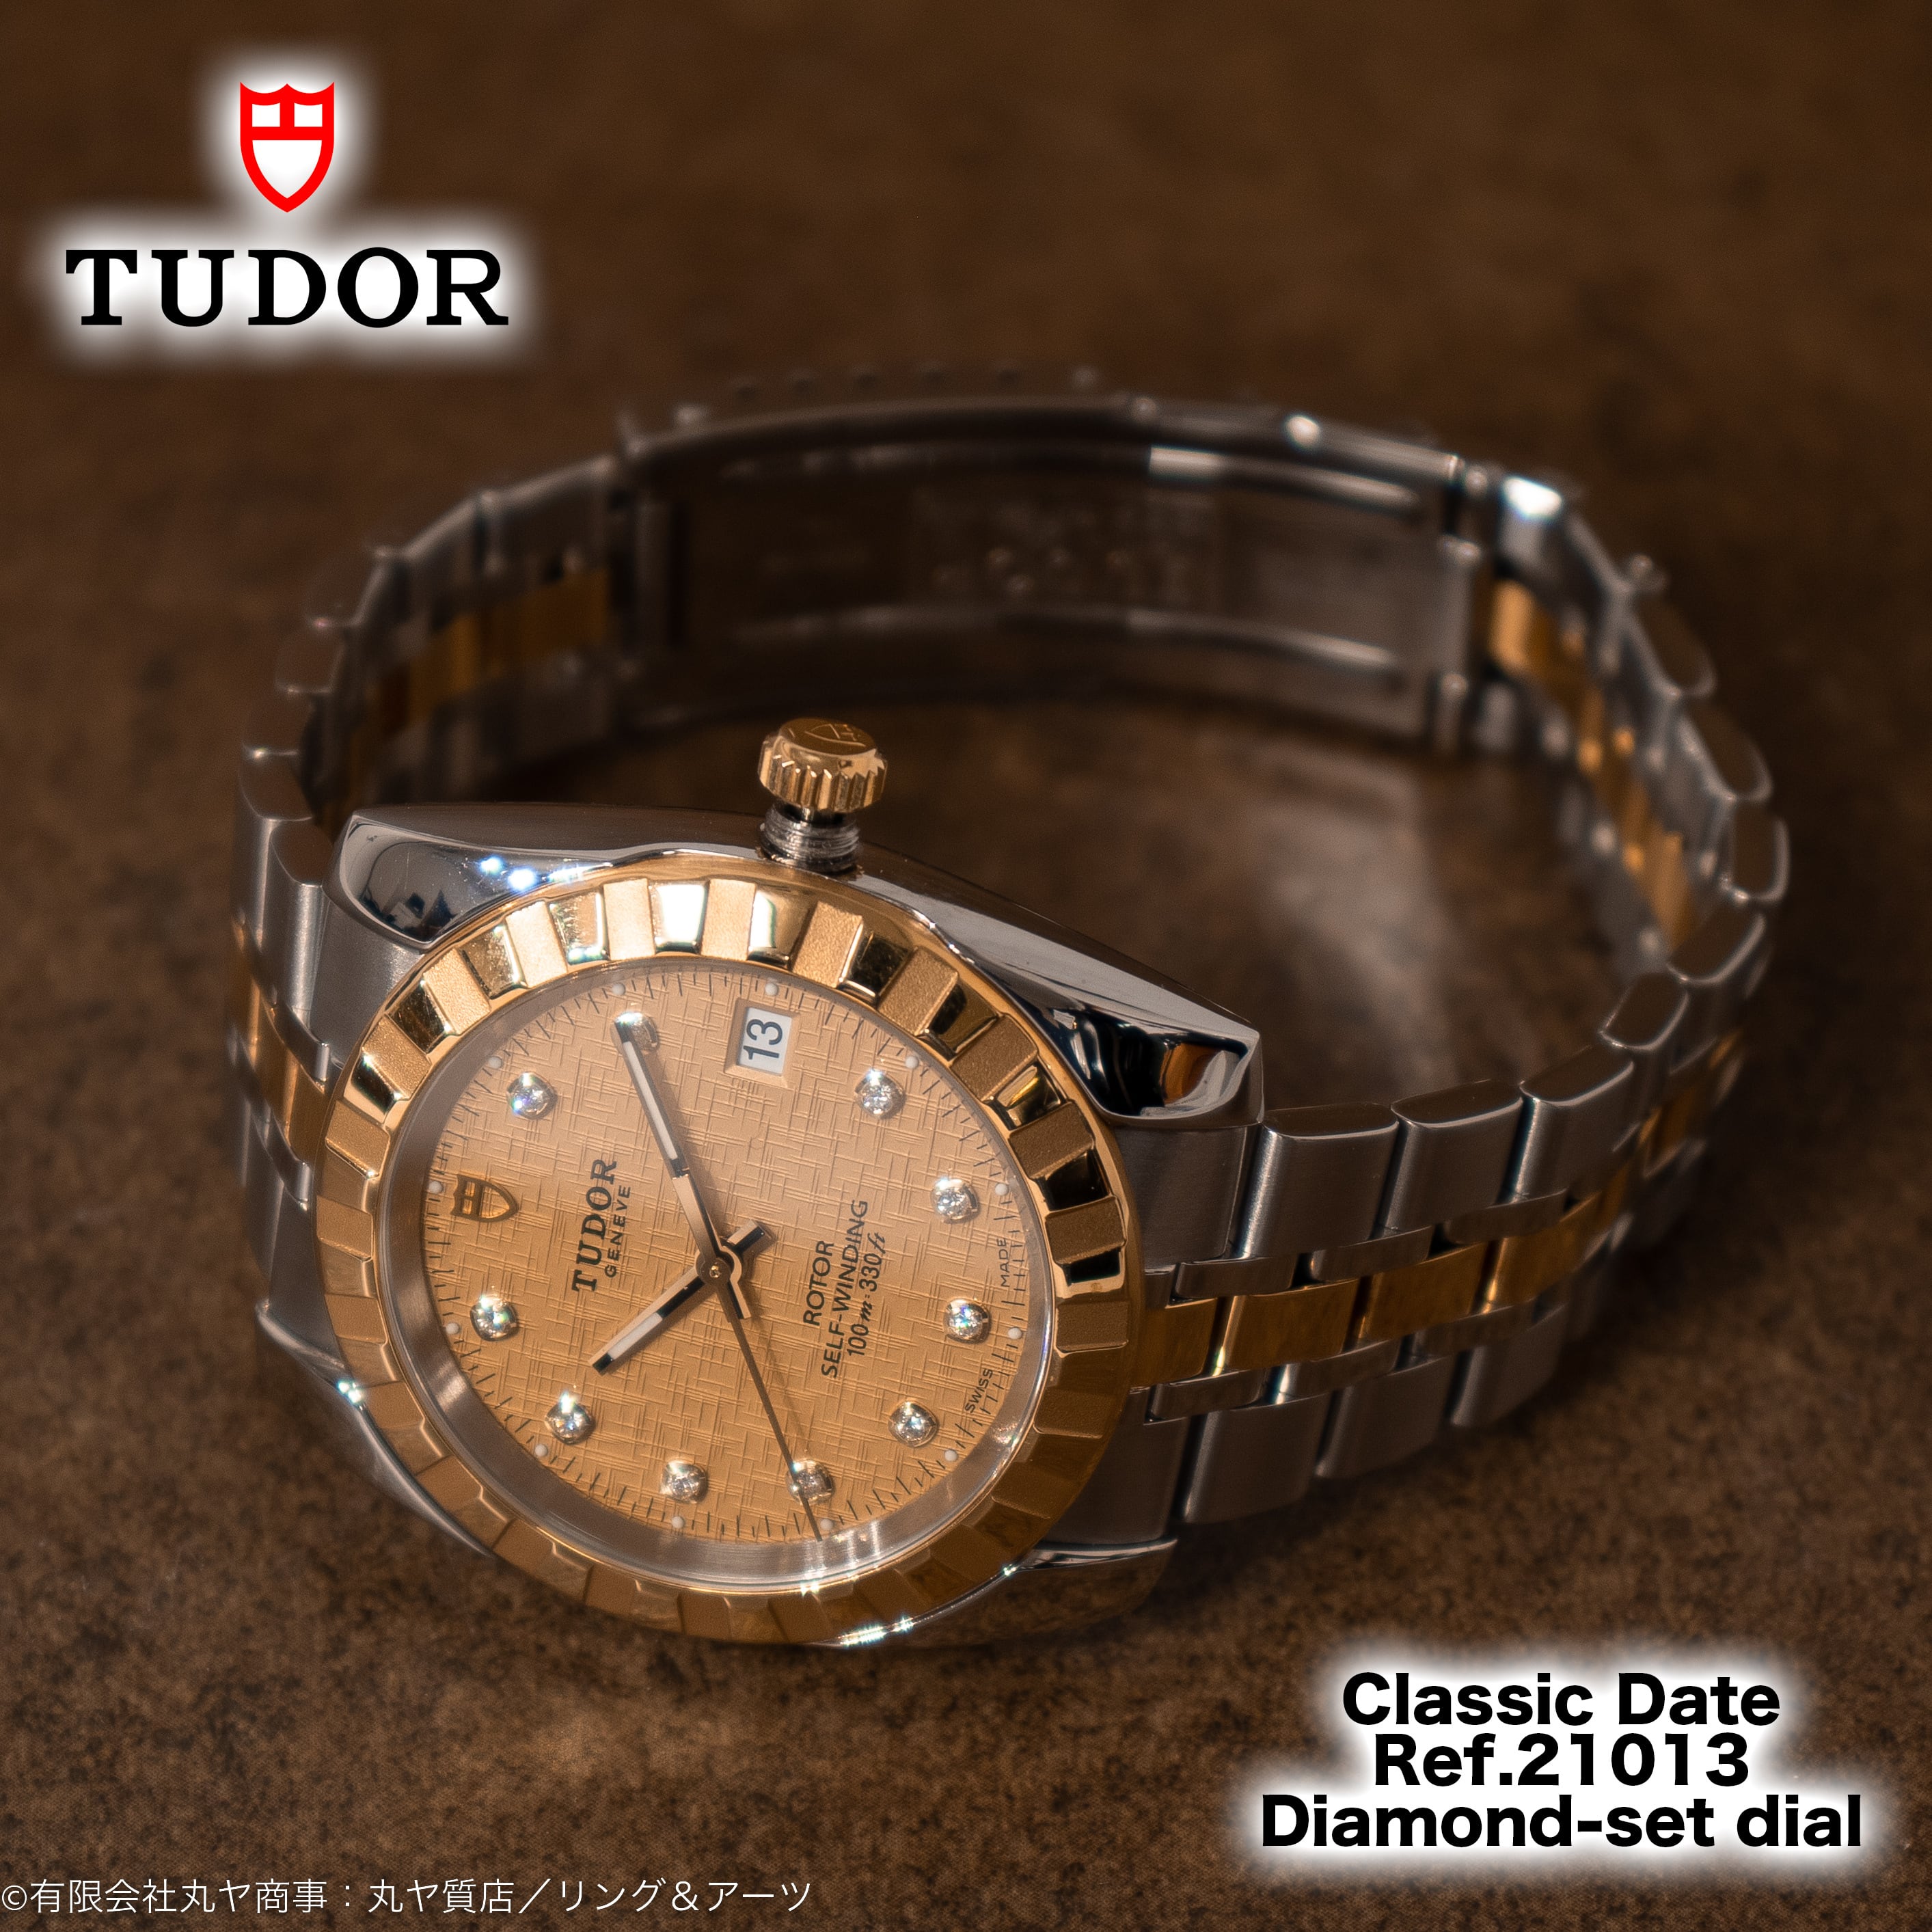 チューダー/チュードル/TUDOR:クラシック デイト 10Pダイヤモンド入りシャンパン文字盤製自動巻腕時計/Ref.21013型/TUDOR  CLASSIC DATE Diamond set dial | ...